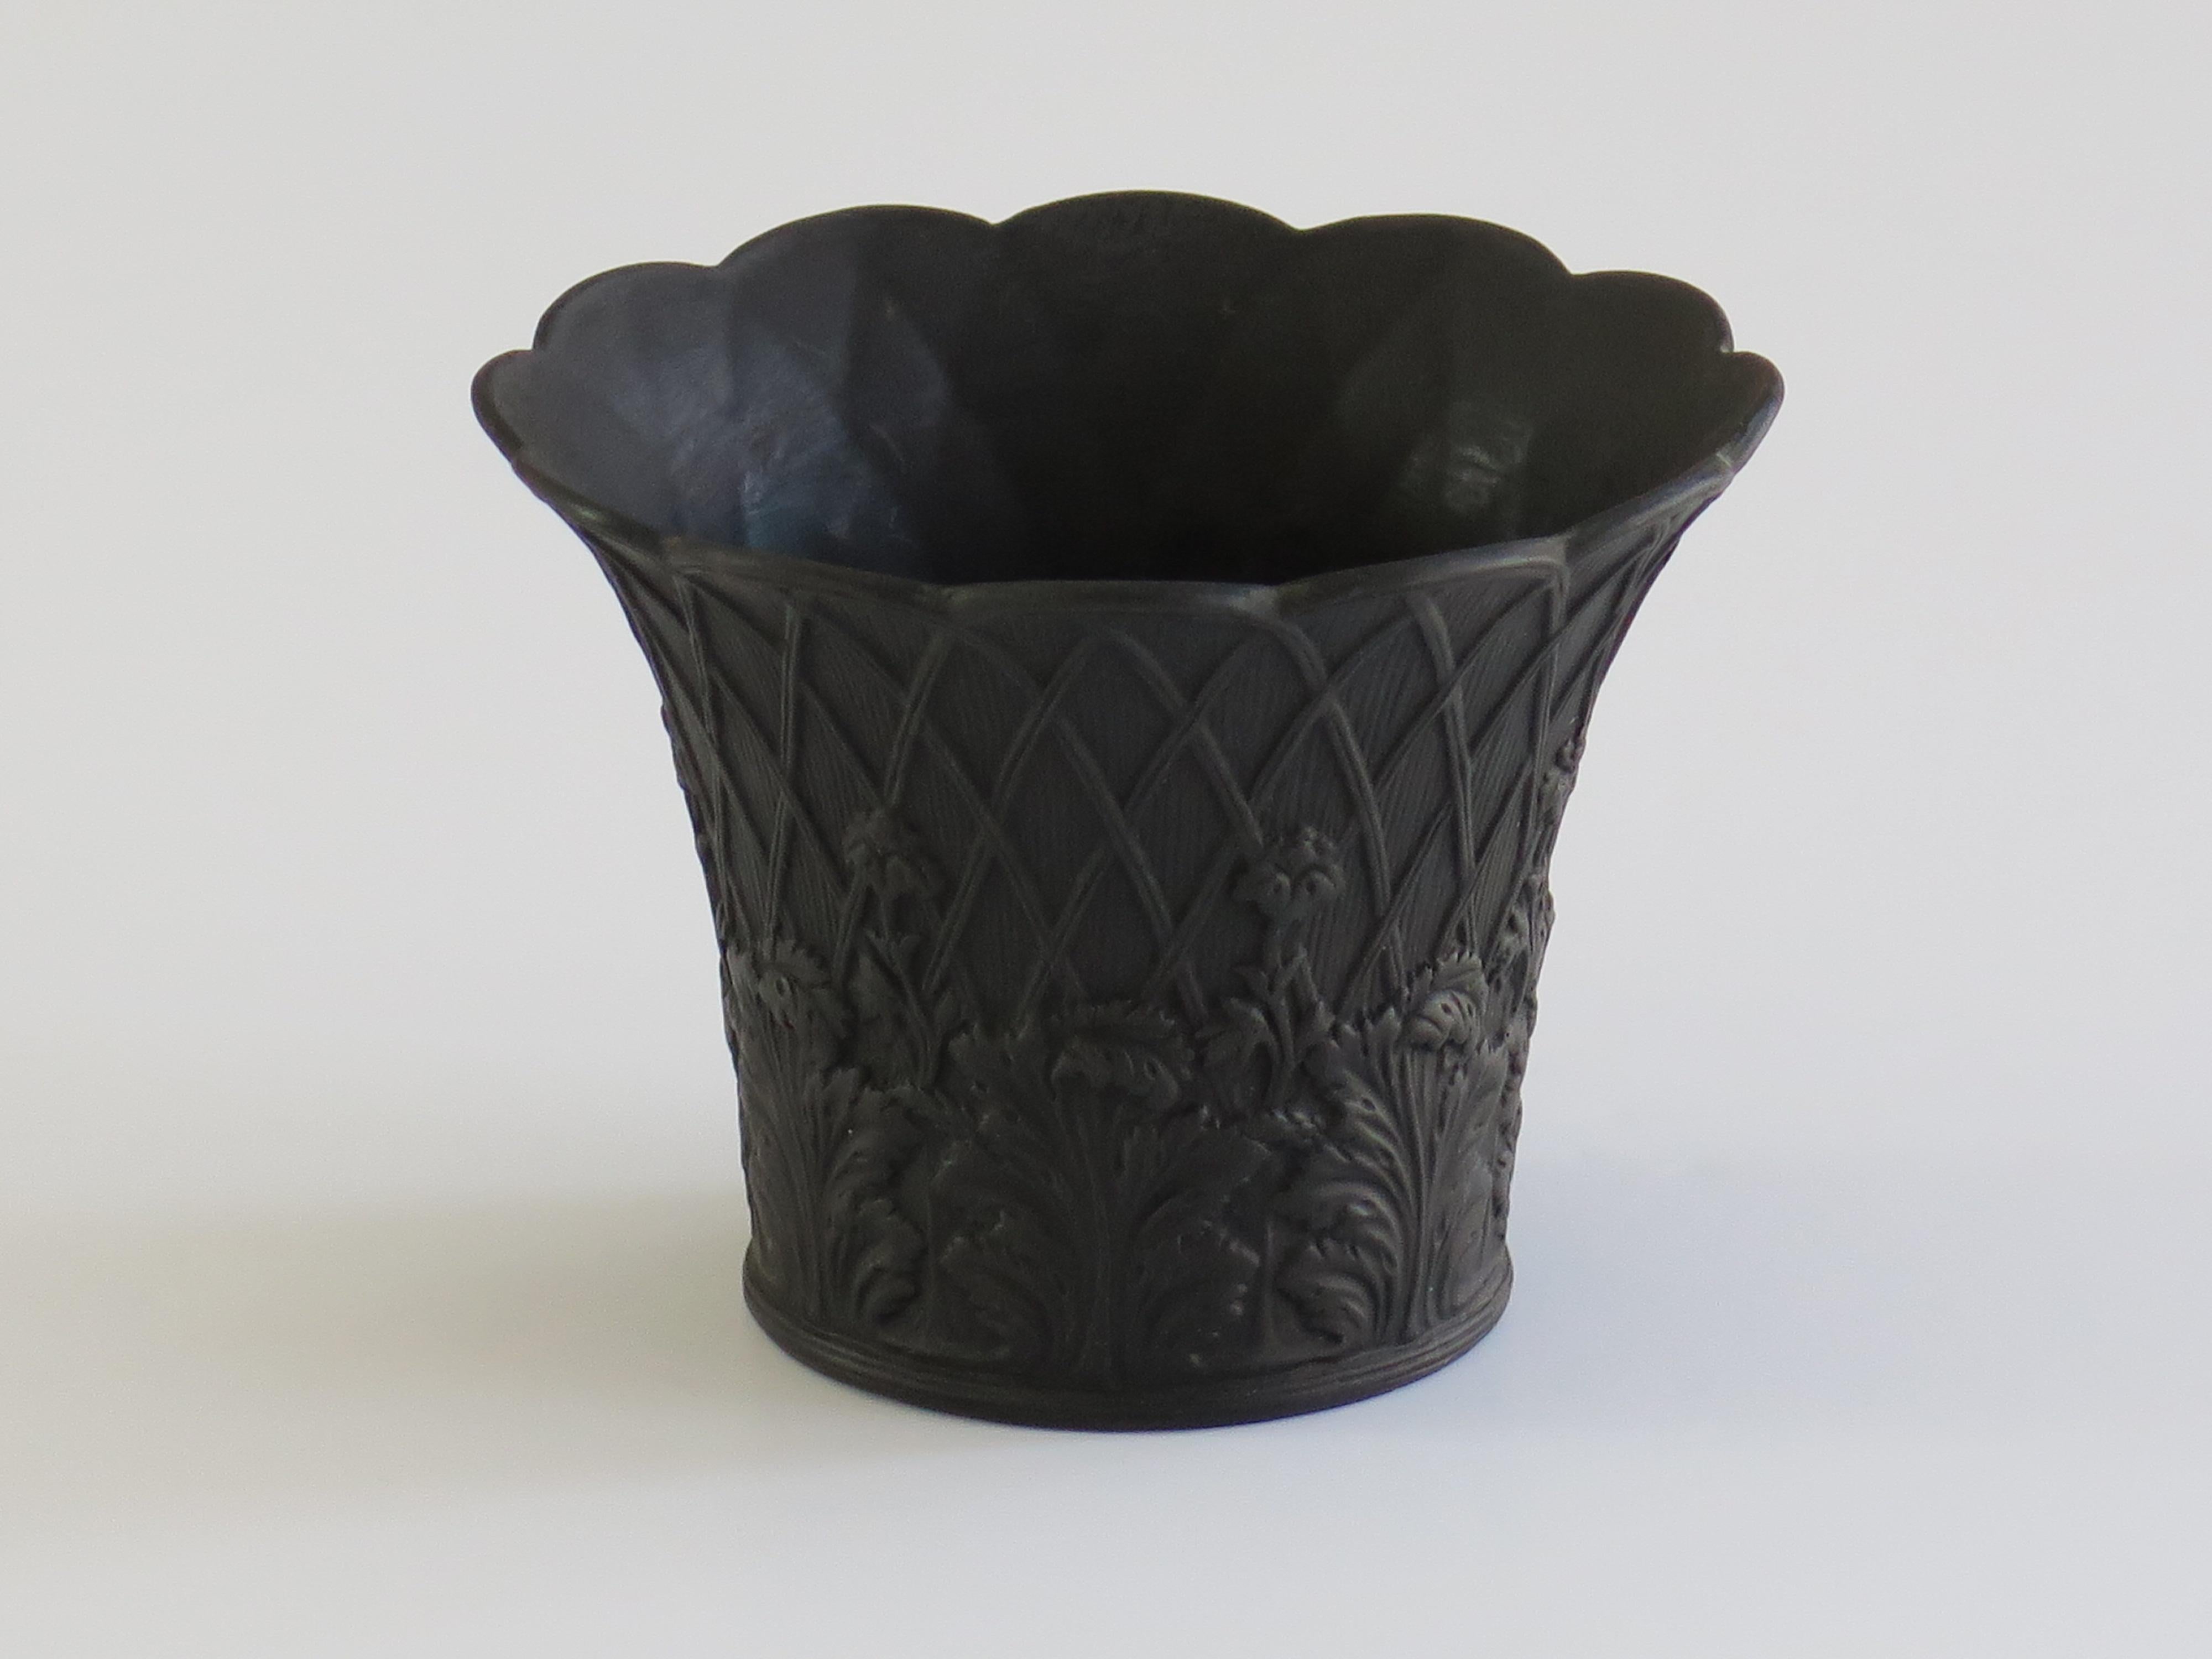 Dies ist eine gute schwarze Basalt kleinen Blumentopf, von Wedgwood und aus dem frühen 20. Jahrhundert, Circa 1920er Jahre. 

Das Stück ist gut getopft in einer traditionellen Blumentopfform mit einem umgedrehten Rand, der einen gewellten Rand